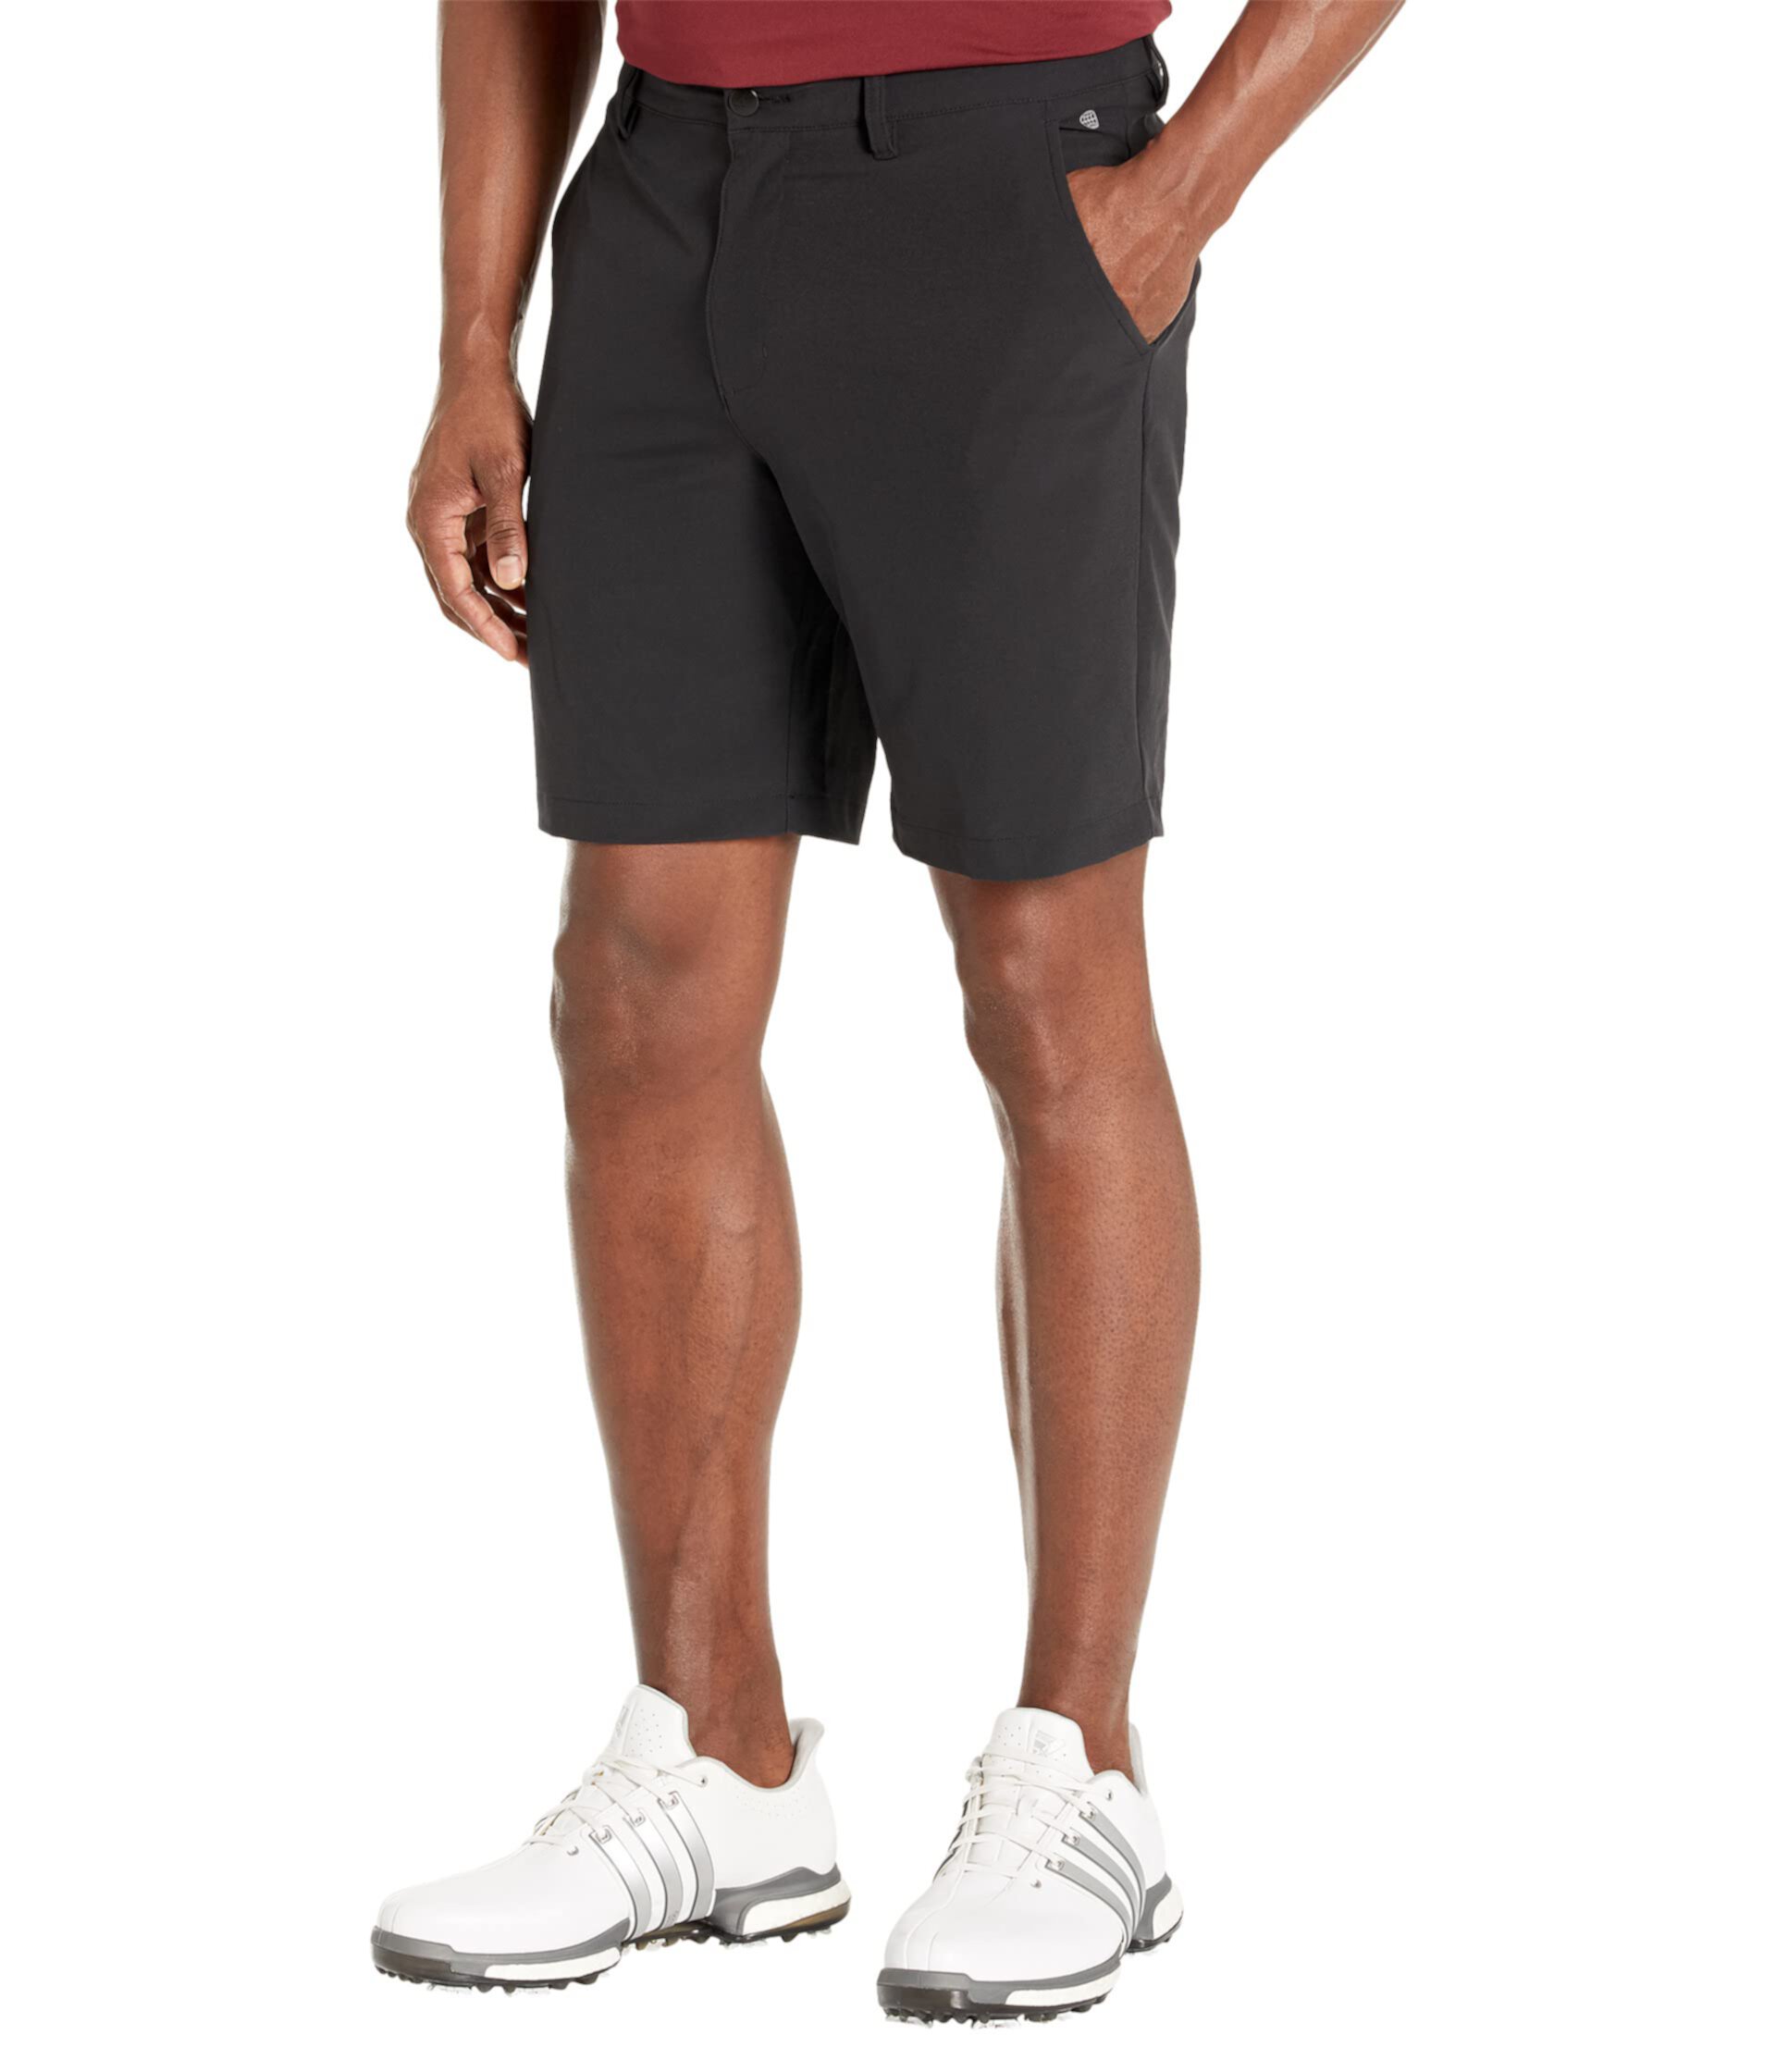 Короткие шорты для гольфа Ultimate365 8.5 (21,6 cm) от Adidas для мужчин Adidas